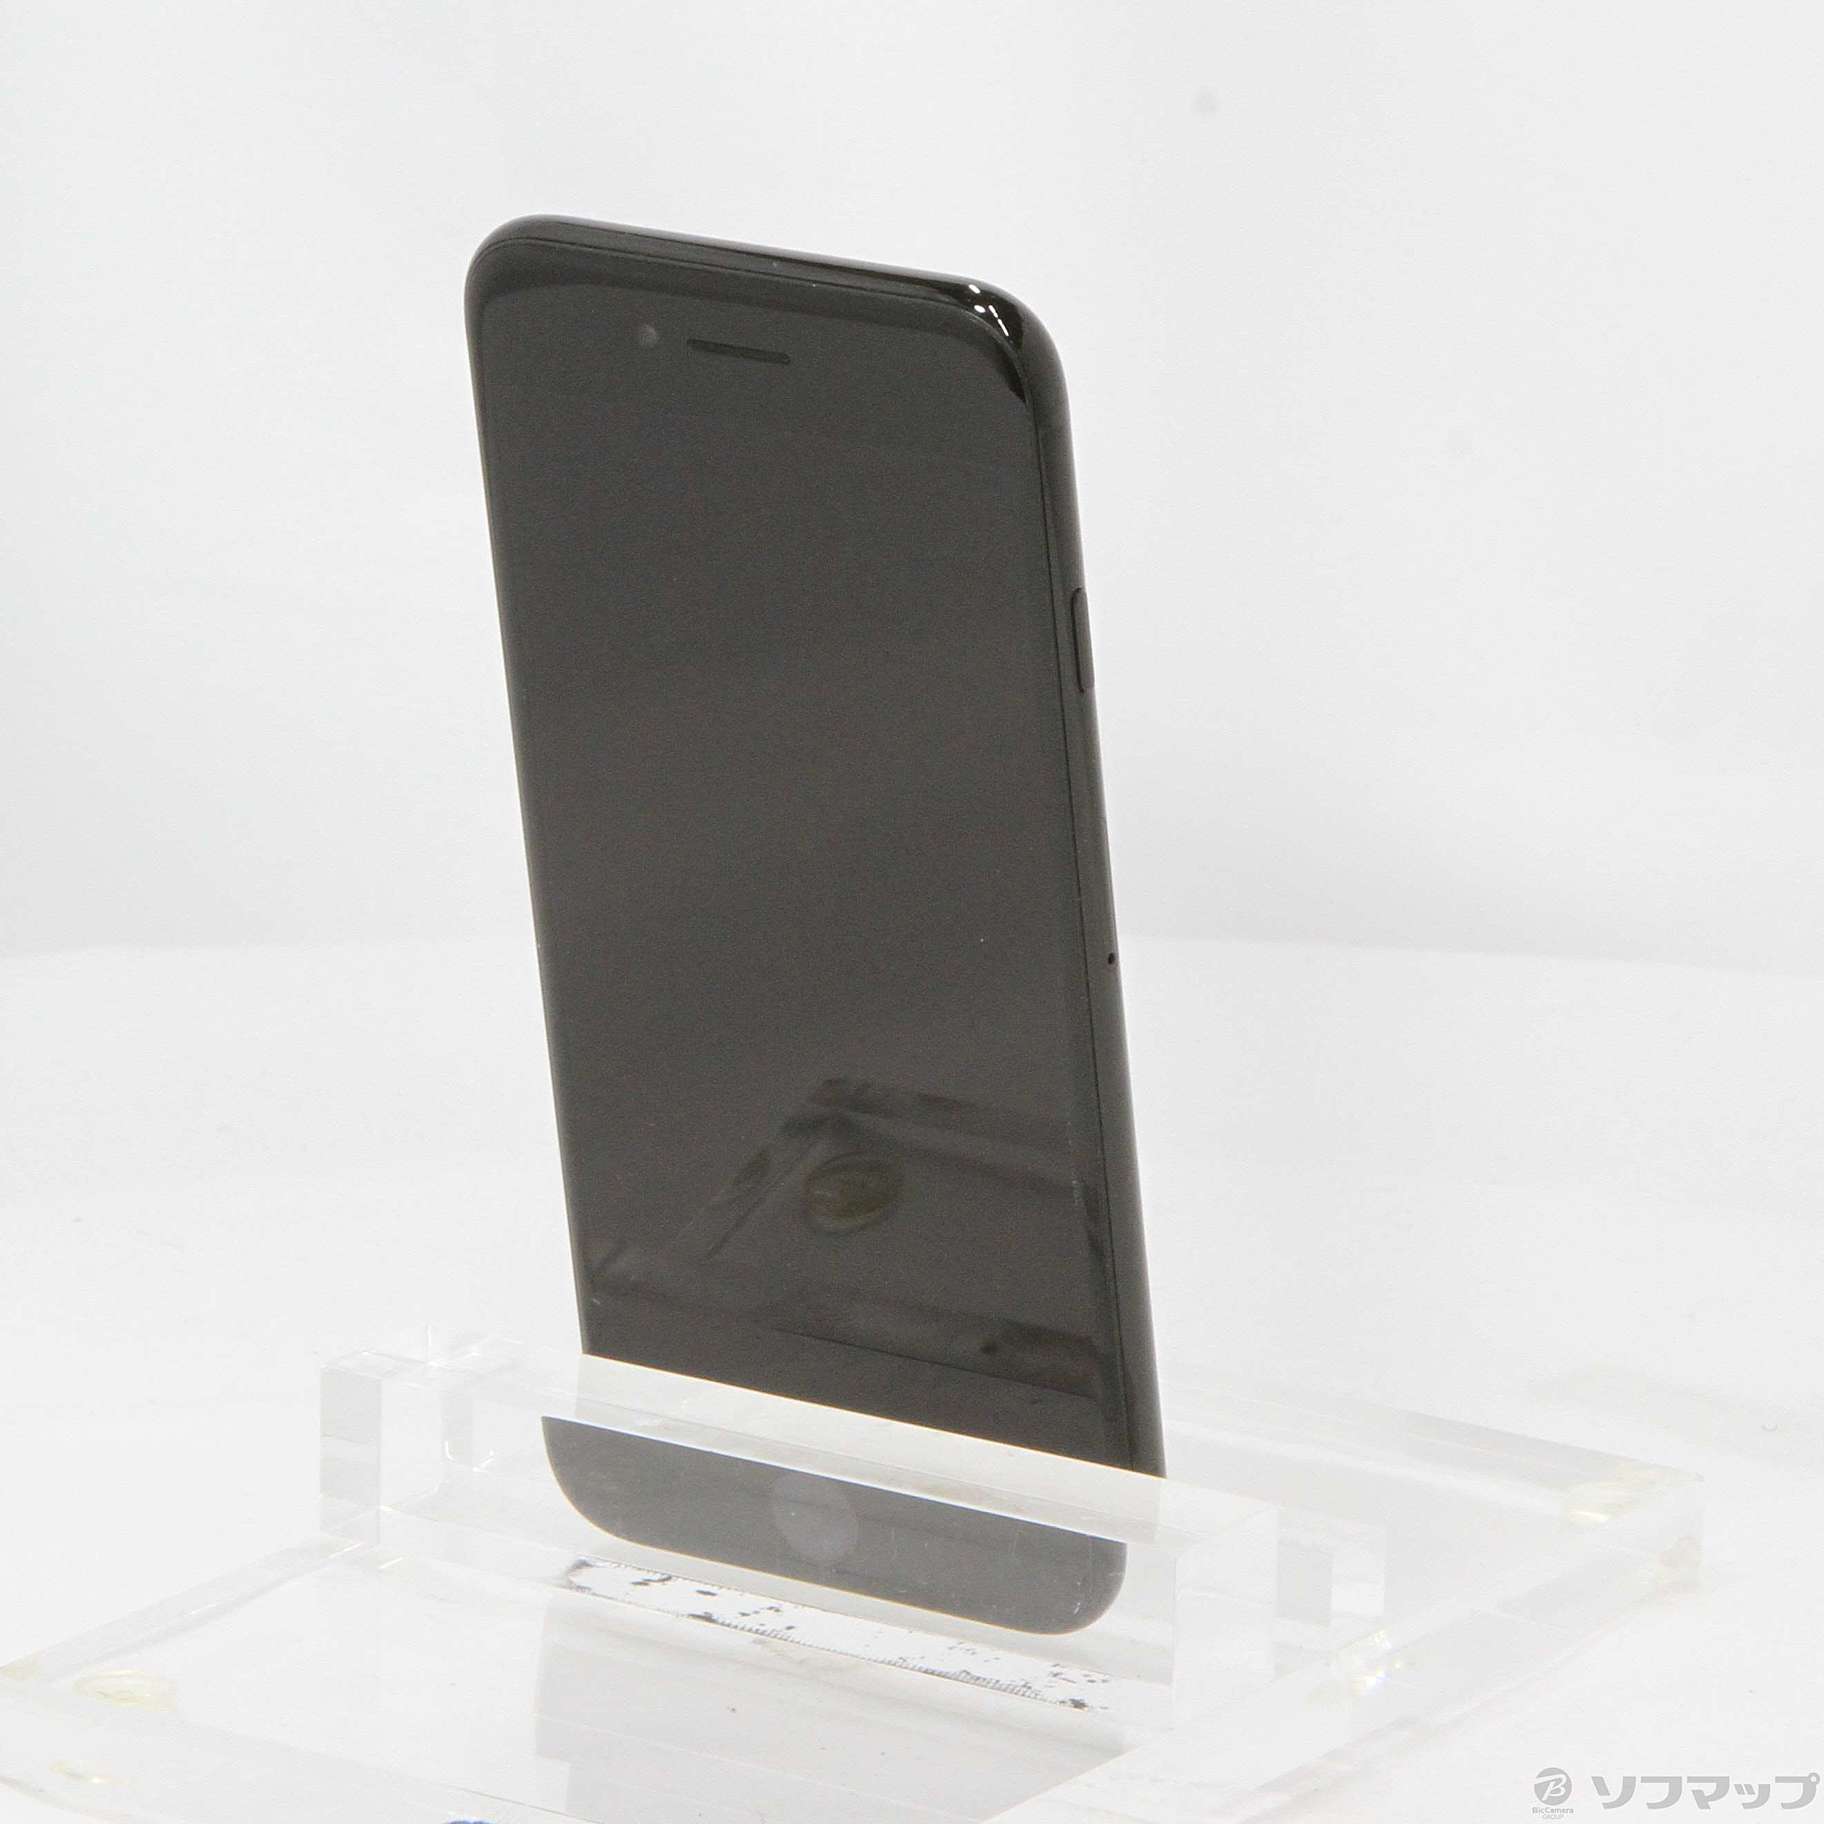 【販売促進】iPhone7 128GB ジェットブラック MNCP2J/A スマートフォン本体